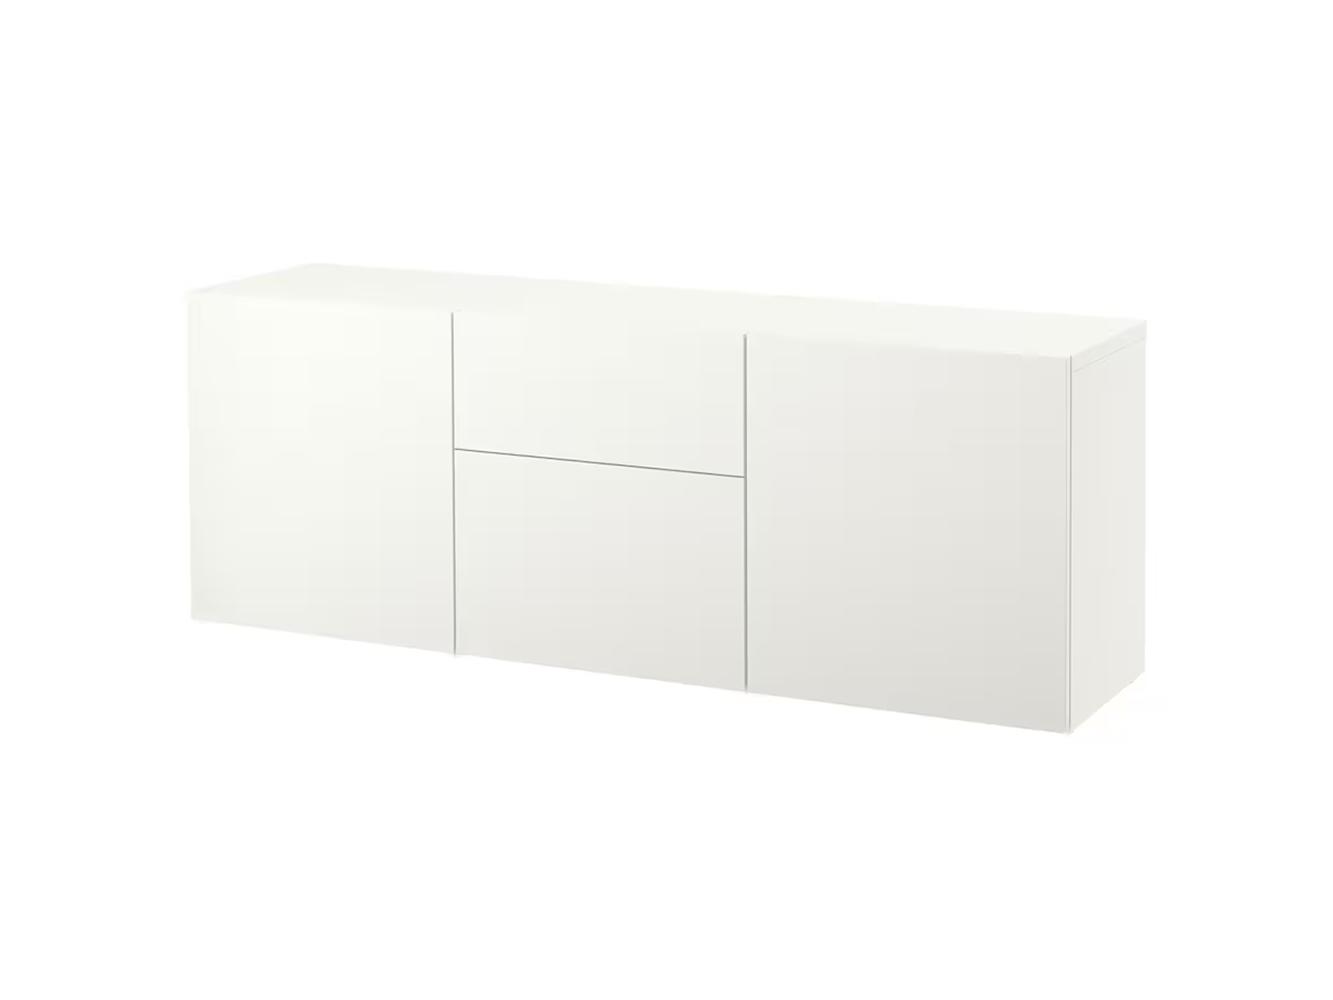 Комод Беста 117 white ИКЕА (IKEA)  изображение товара